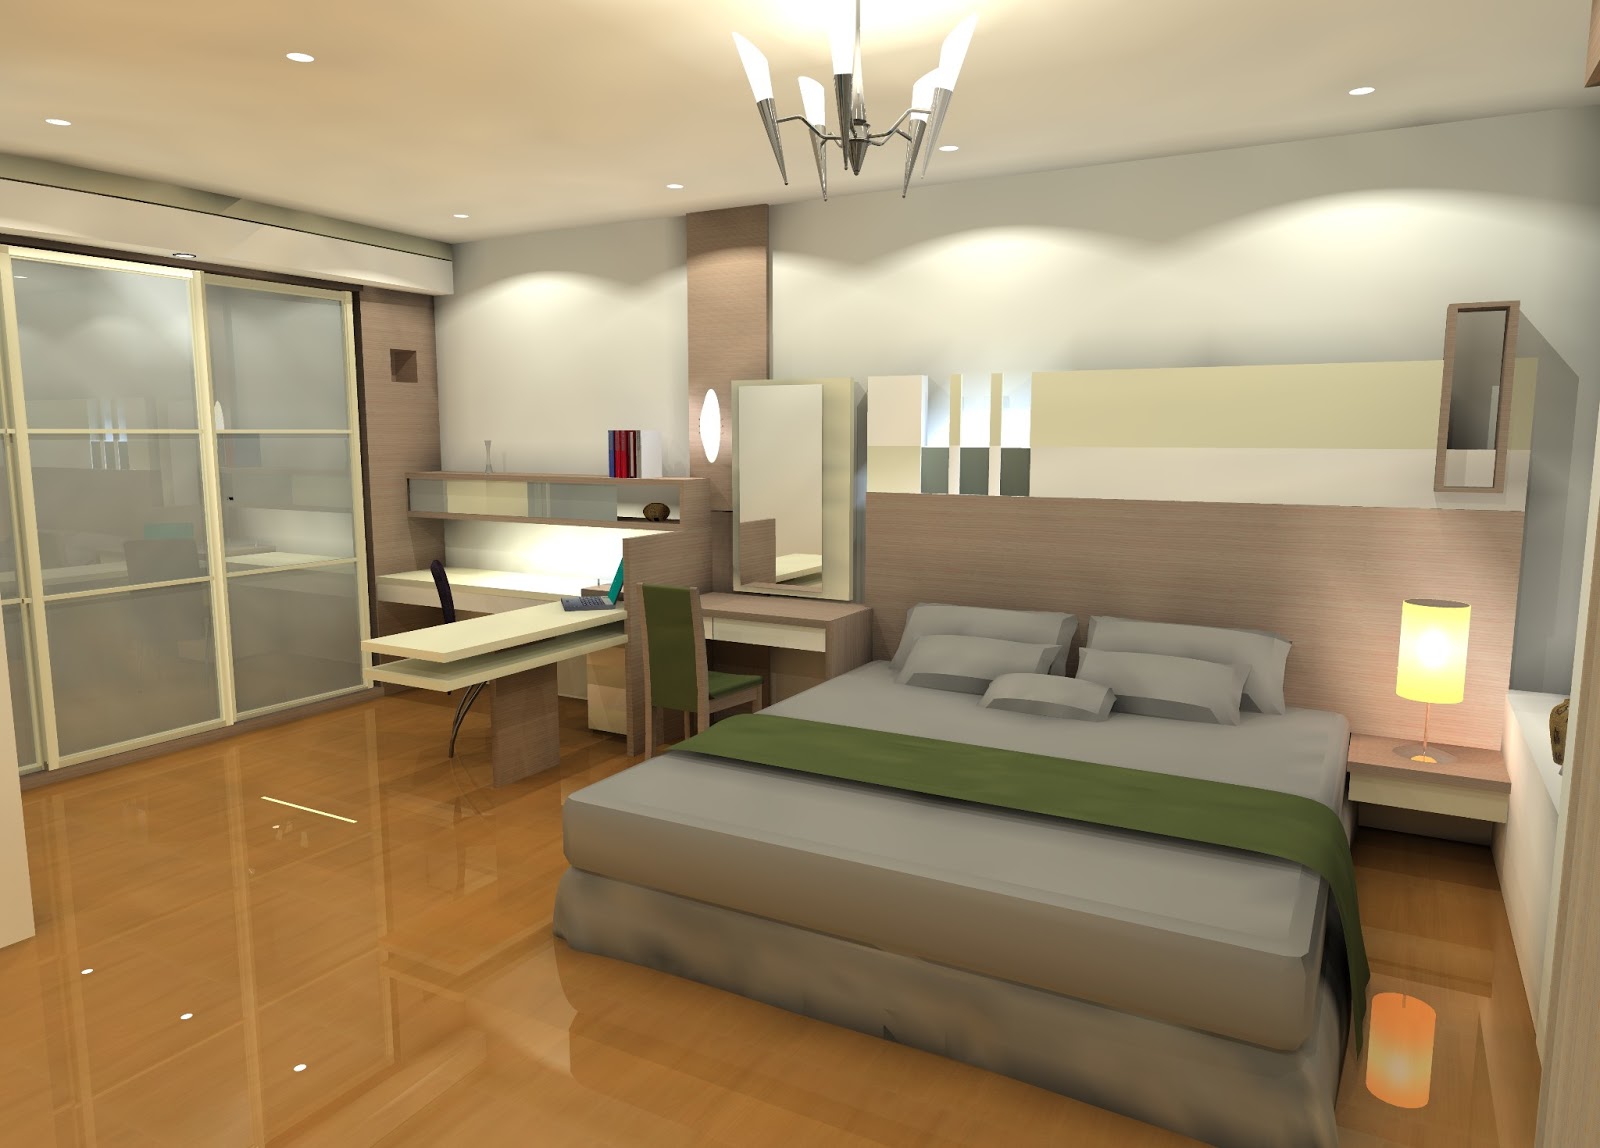  Desain  Interior Kamar  Tidur  Modern  Rumah Minimalis 